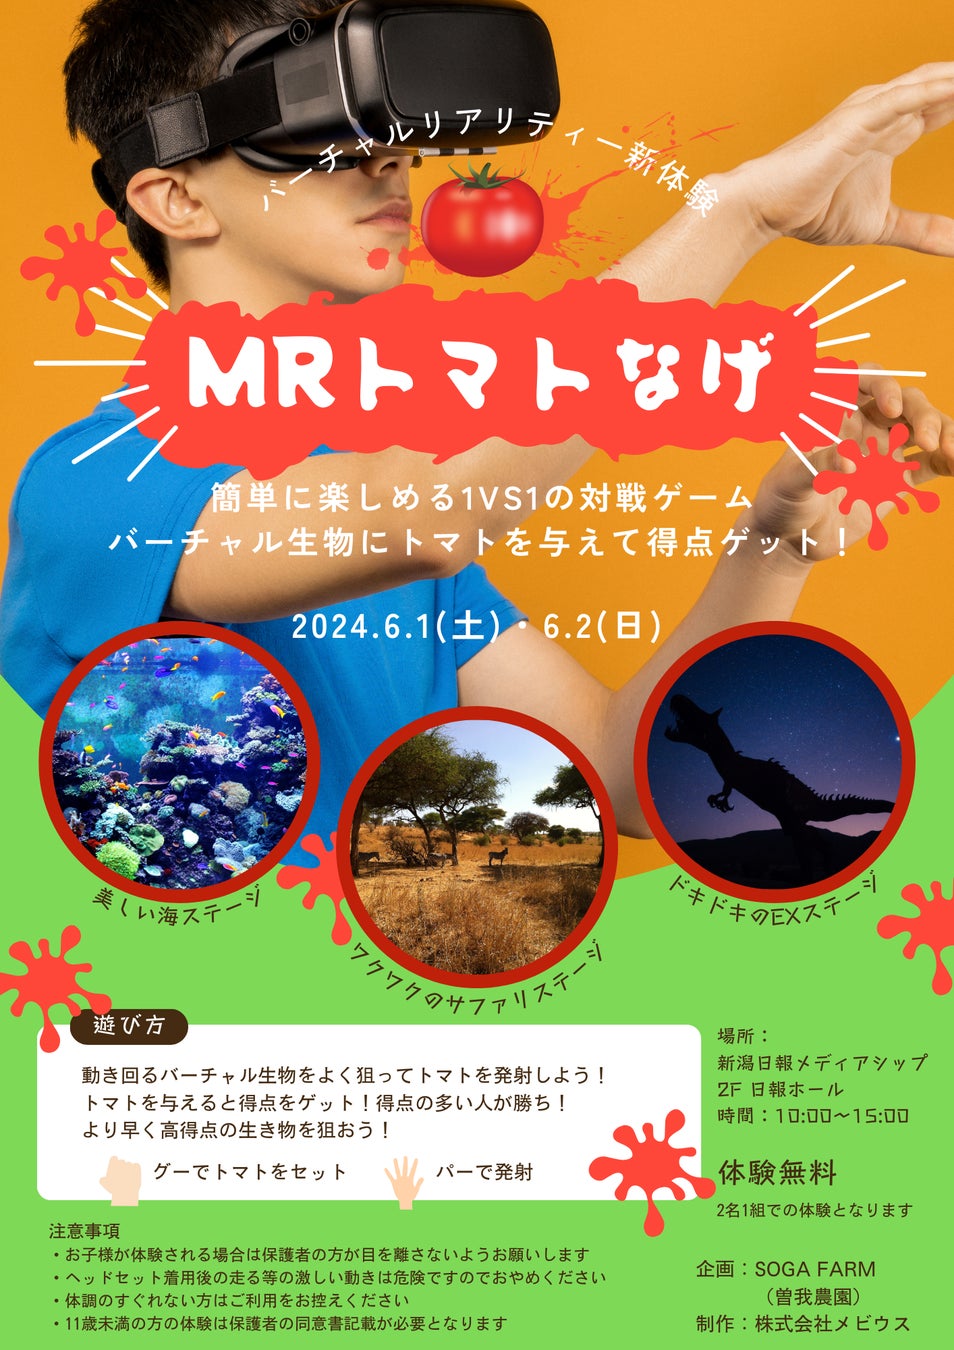 日本初の複合現実（MR）とまと投げで「にいがたとまと」 の魅力をつたえるイベントを開催